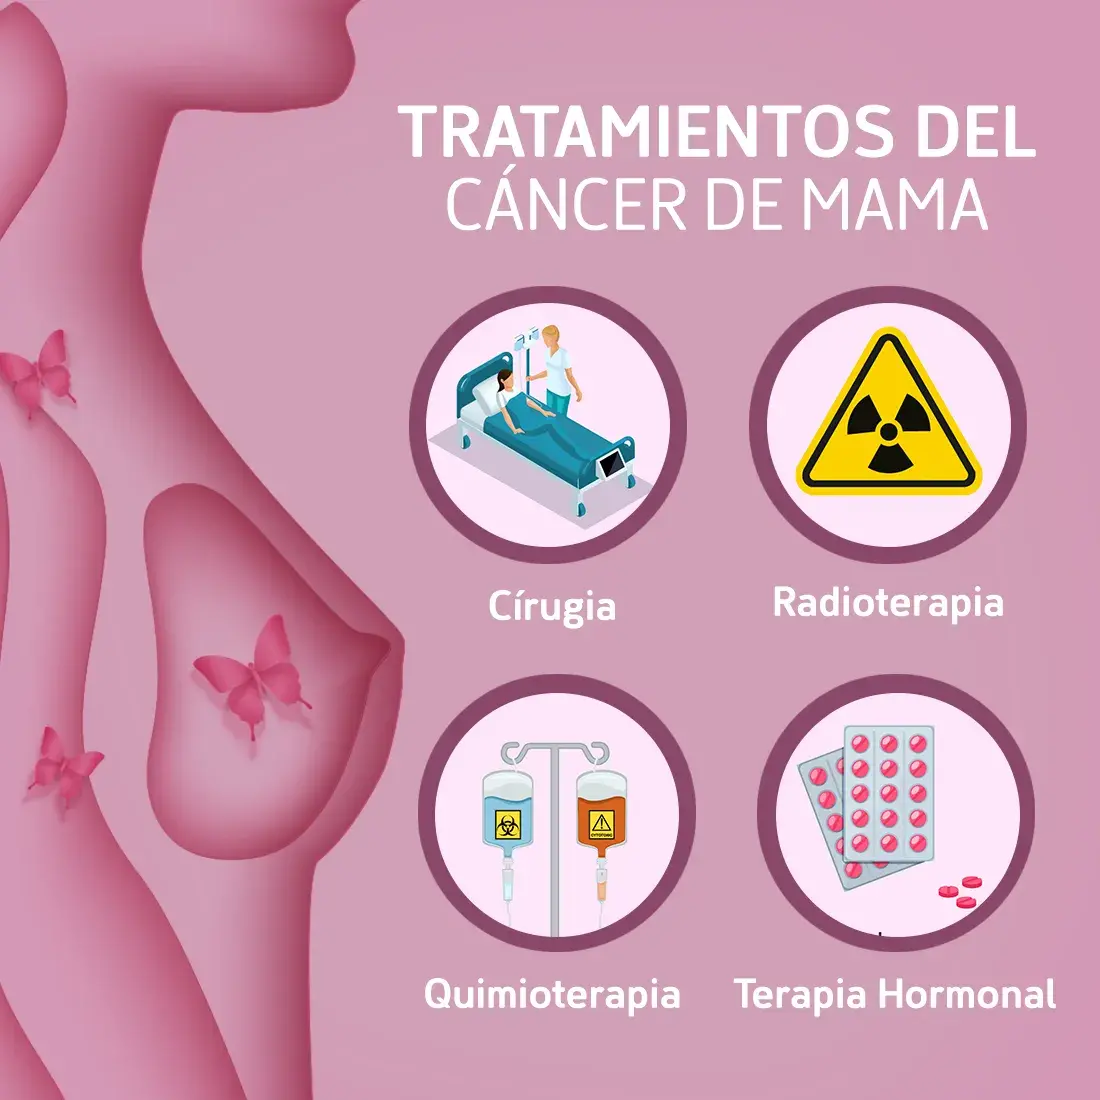 El C Ncer De Mama S Ntomas Y Tratamientos Eltitular Do